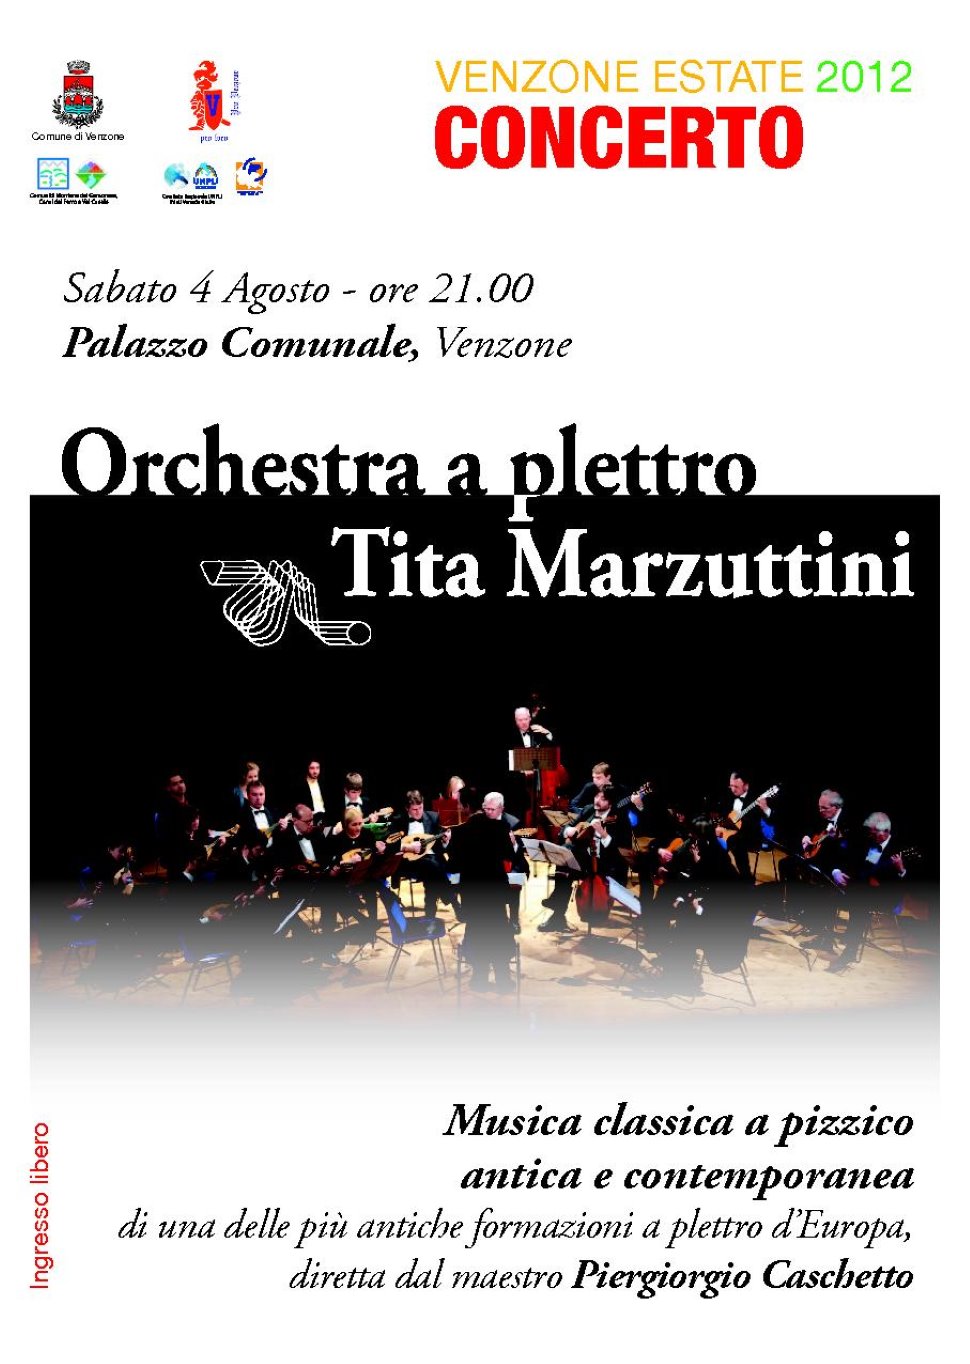 Concerto dell' Orchestra a plettro Tita Marzuttini